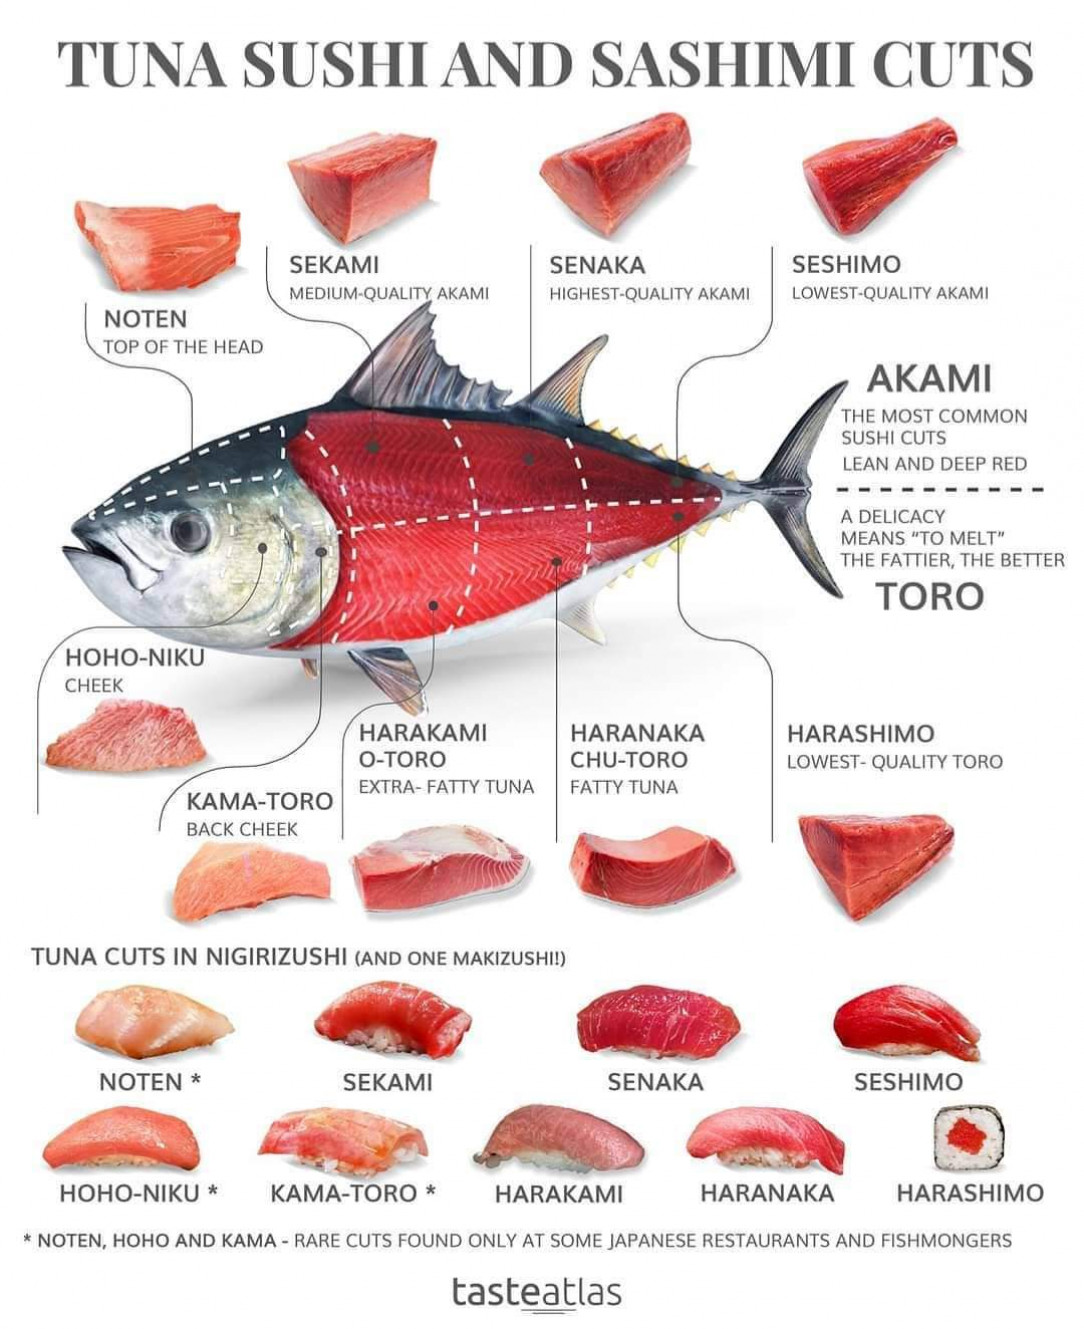 Tuna sushi ans sashimi cut guide